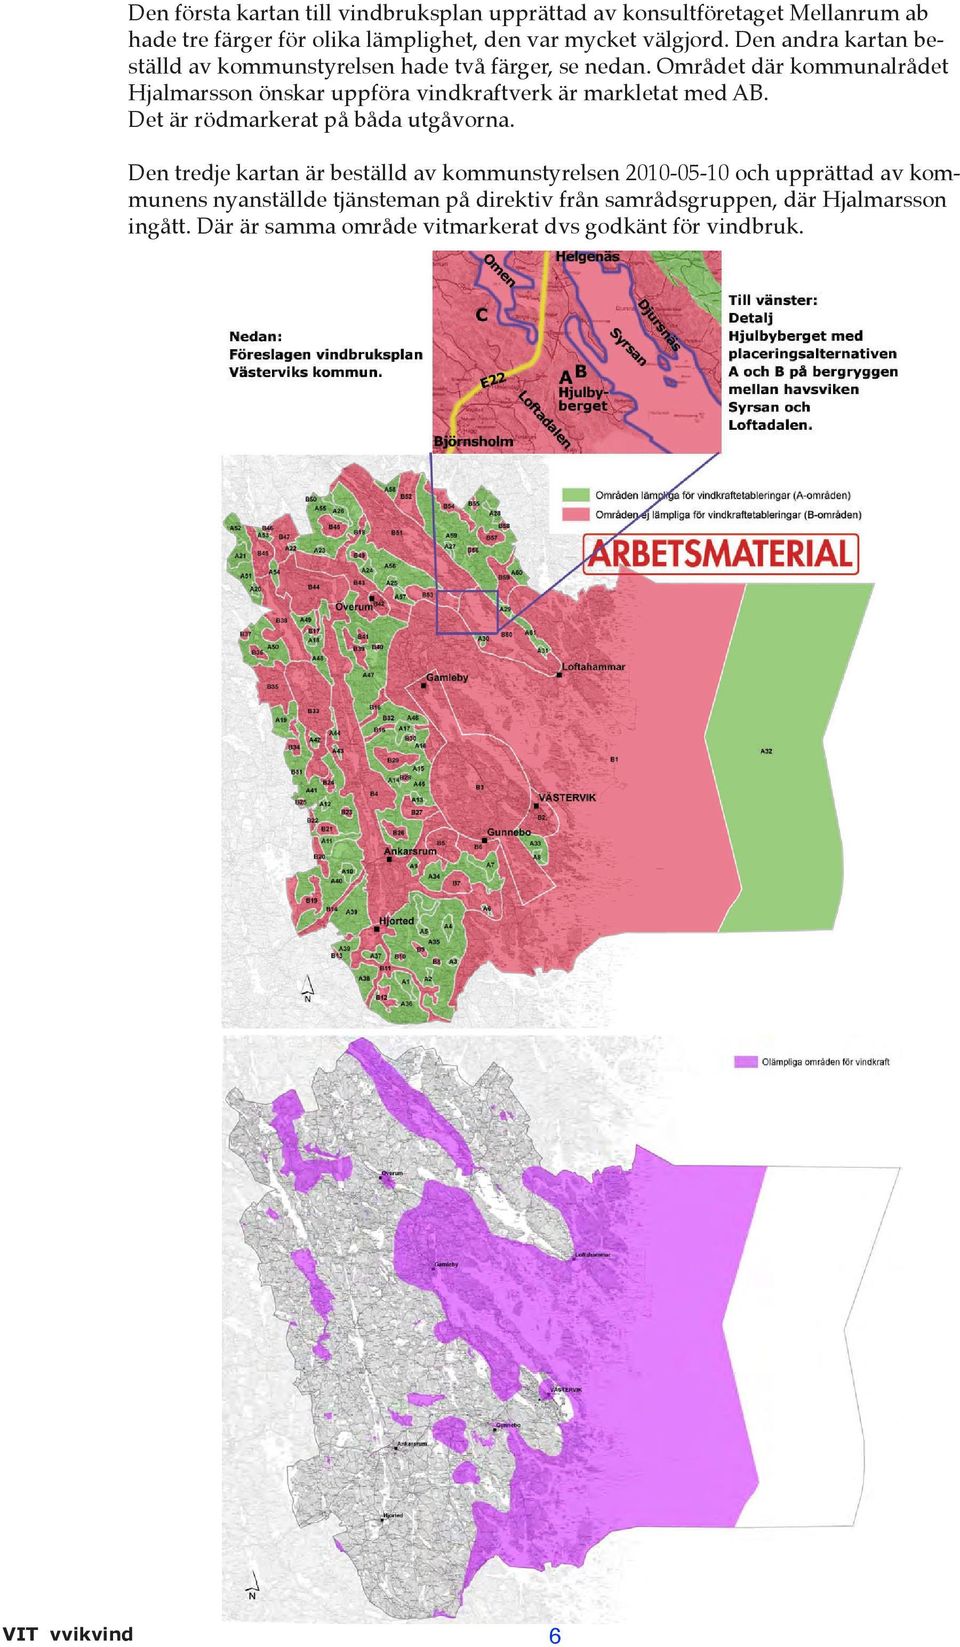 Området där kommunalrådet Hjalmarsson önskar uppföra vindkraftverk är markletat med AB. Det är rödmarkerat på båda utgåvorna.